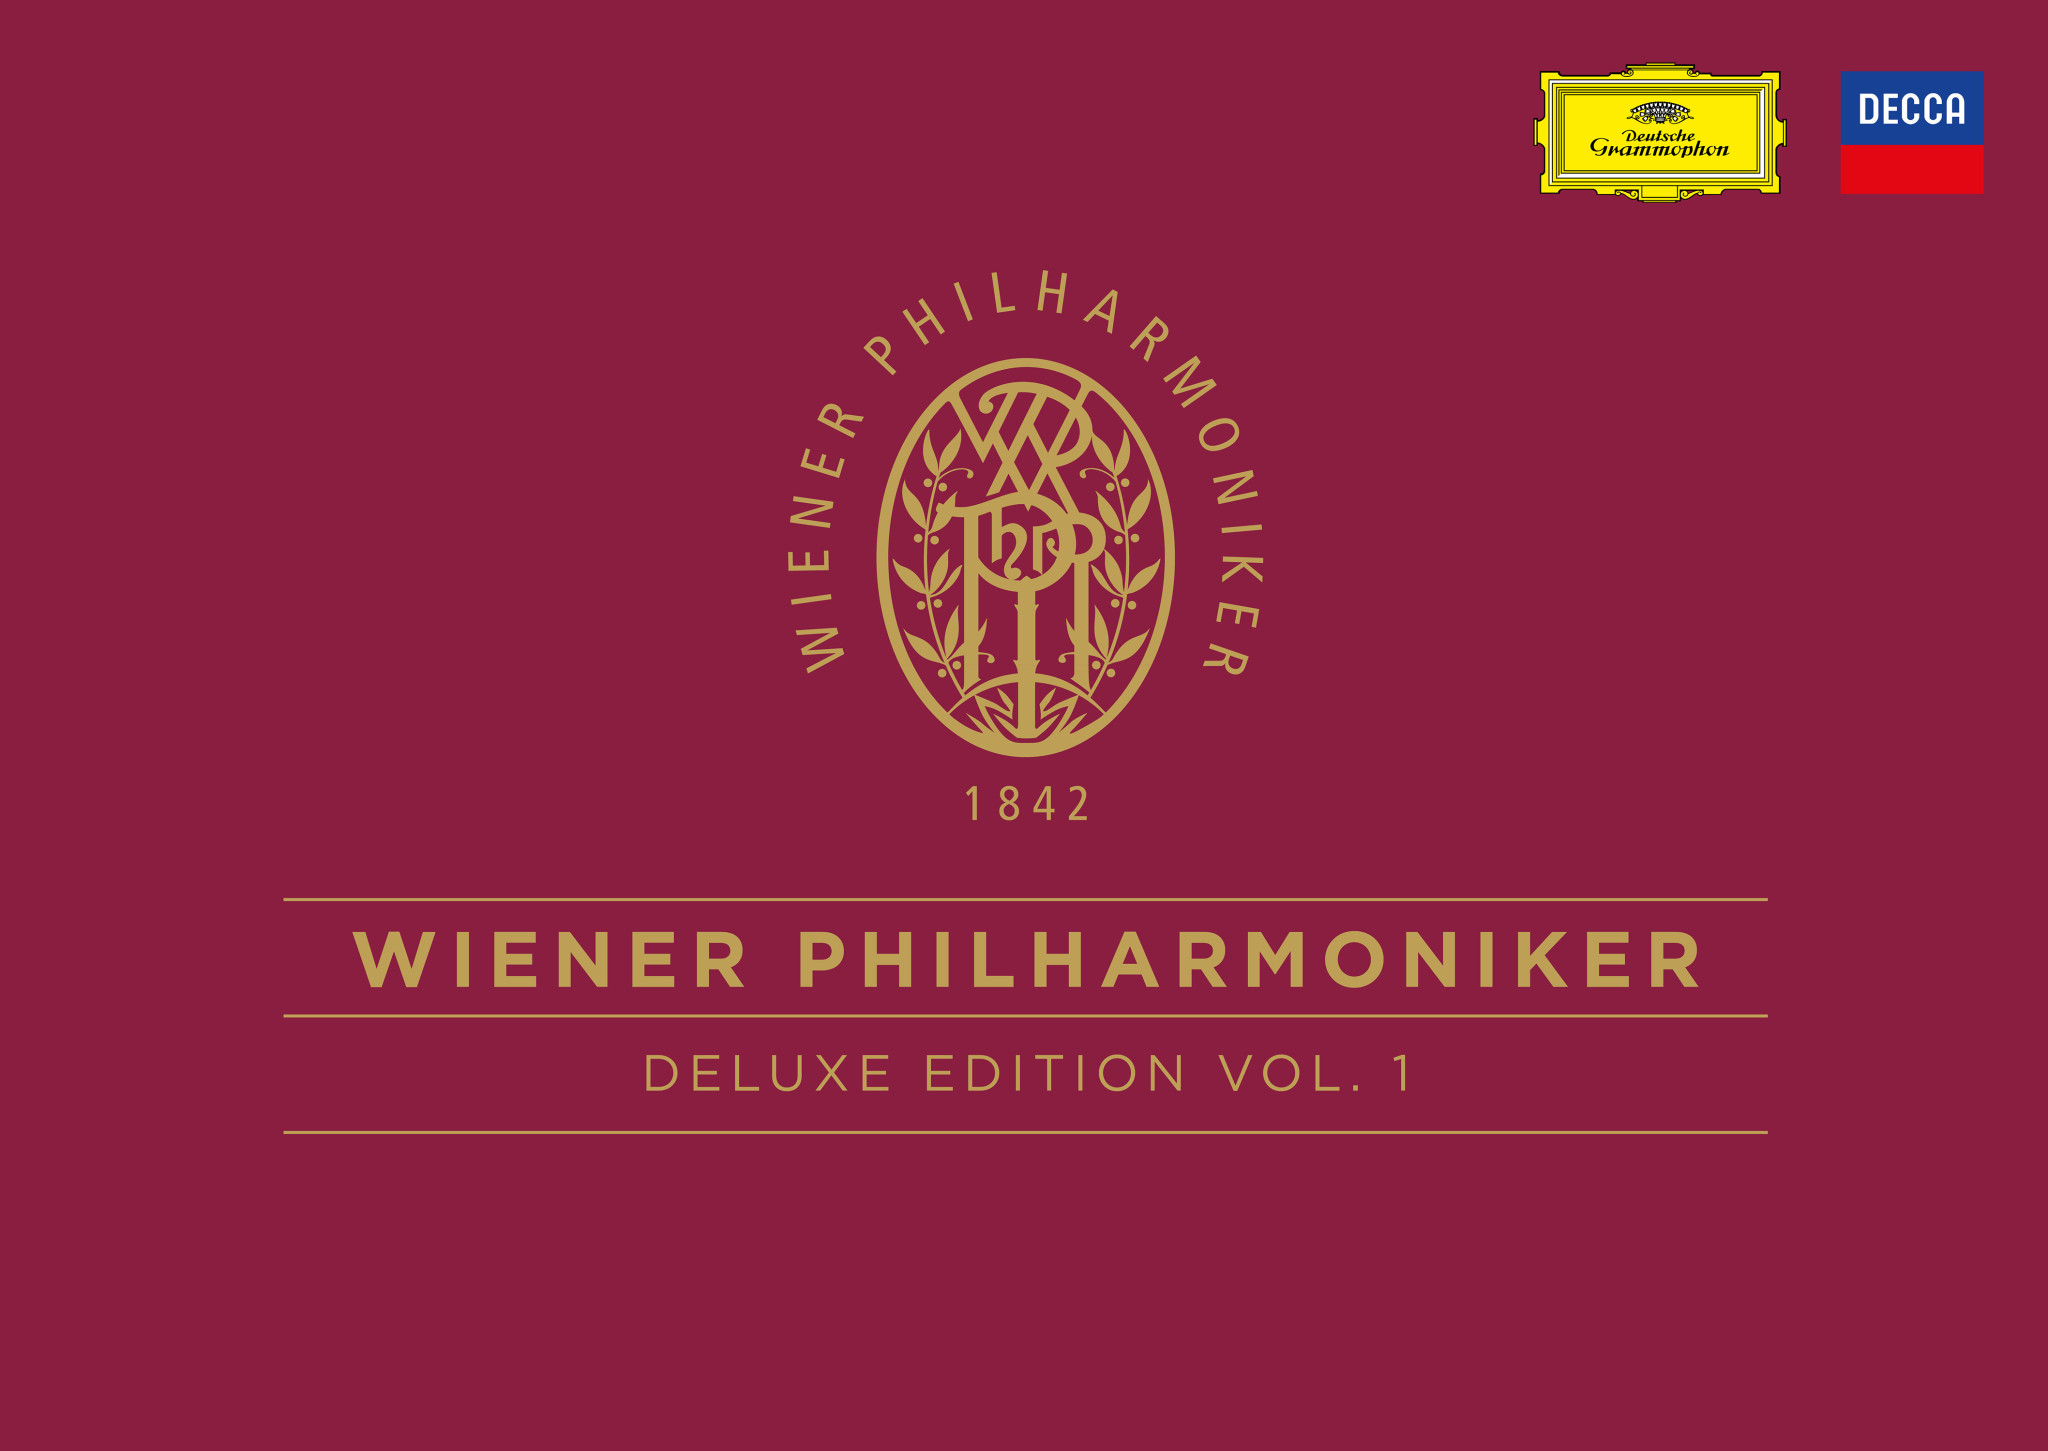 WIENER PHILHARMONIKER Deluxe Edition Vol. 1 | Deutsche Grammophon